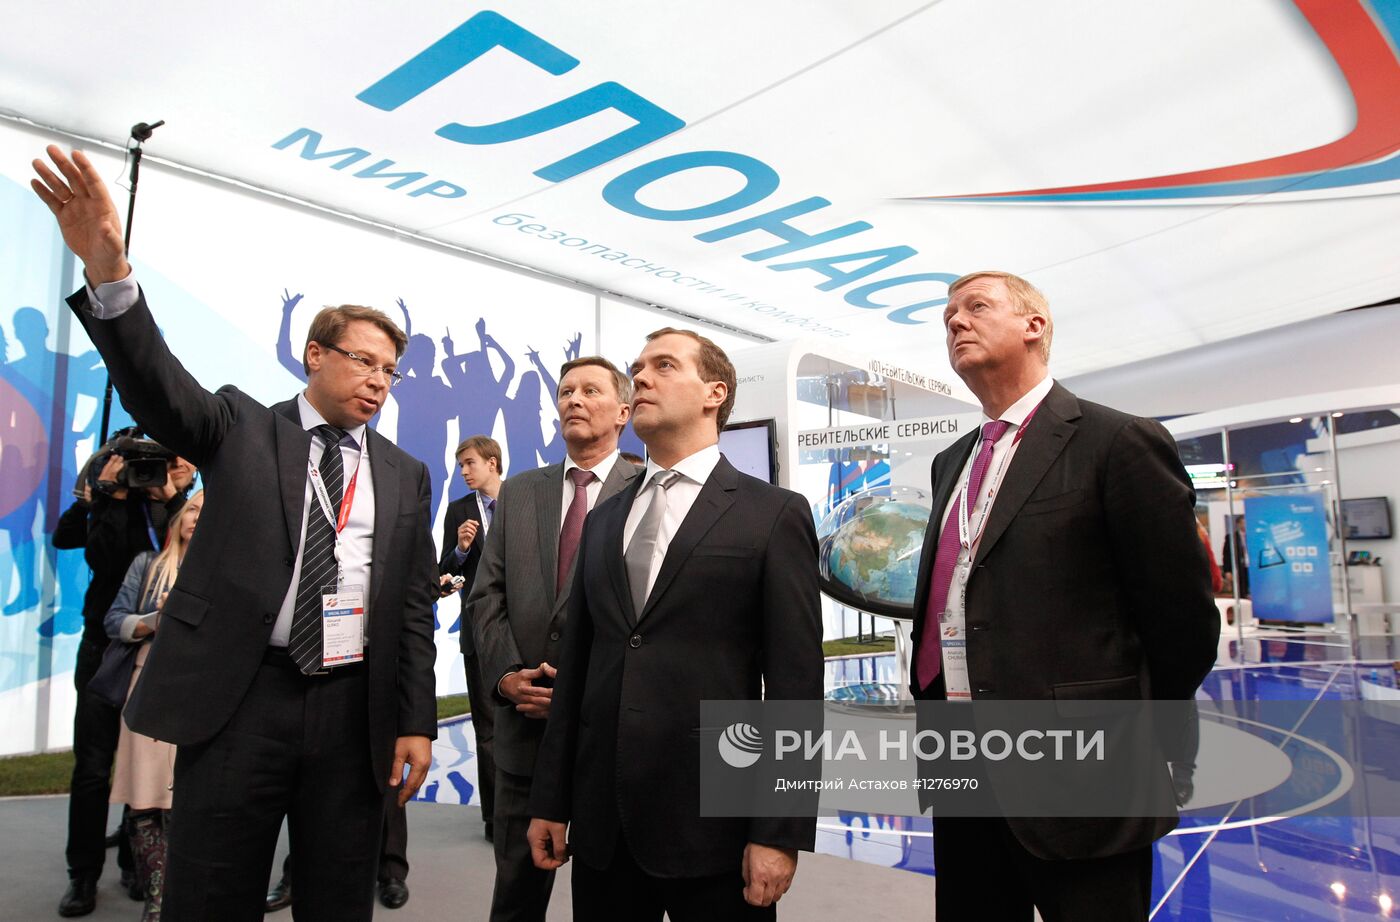 Д.Медведев на открытии форума "Открытые инновации" в Москве